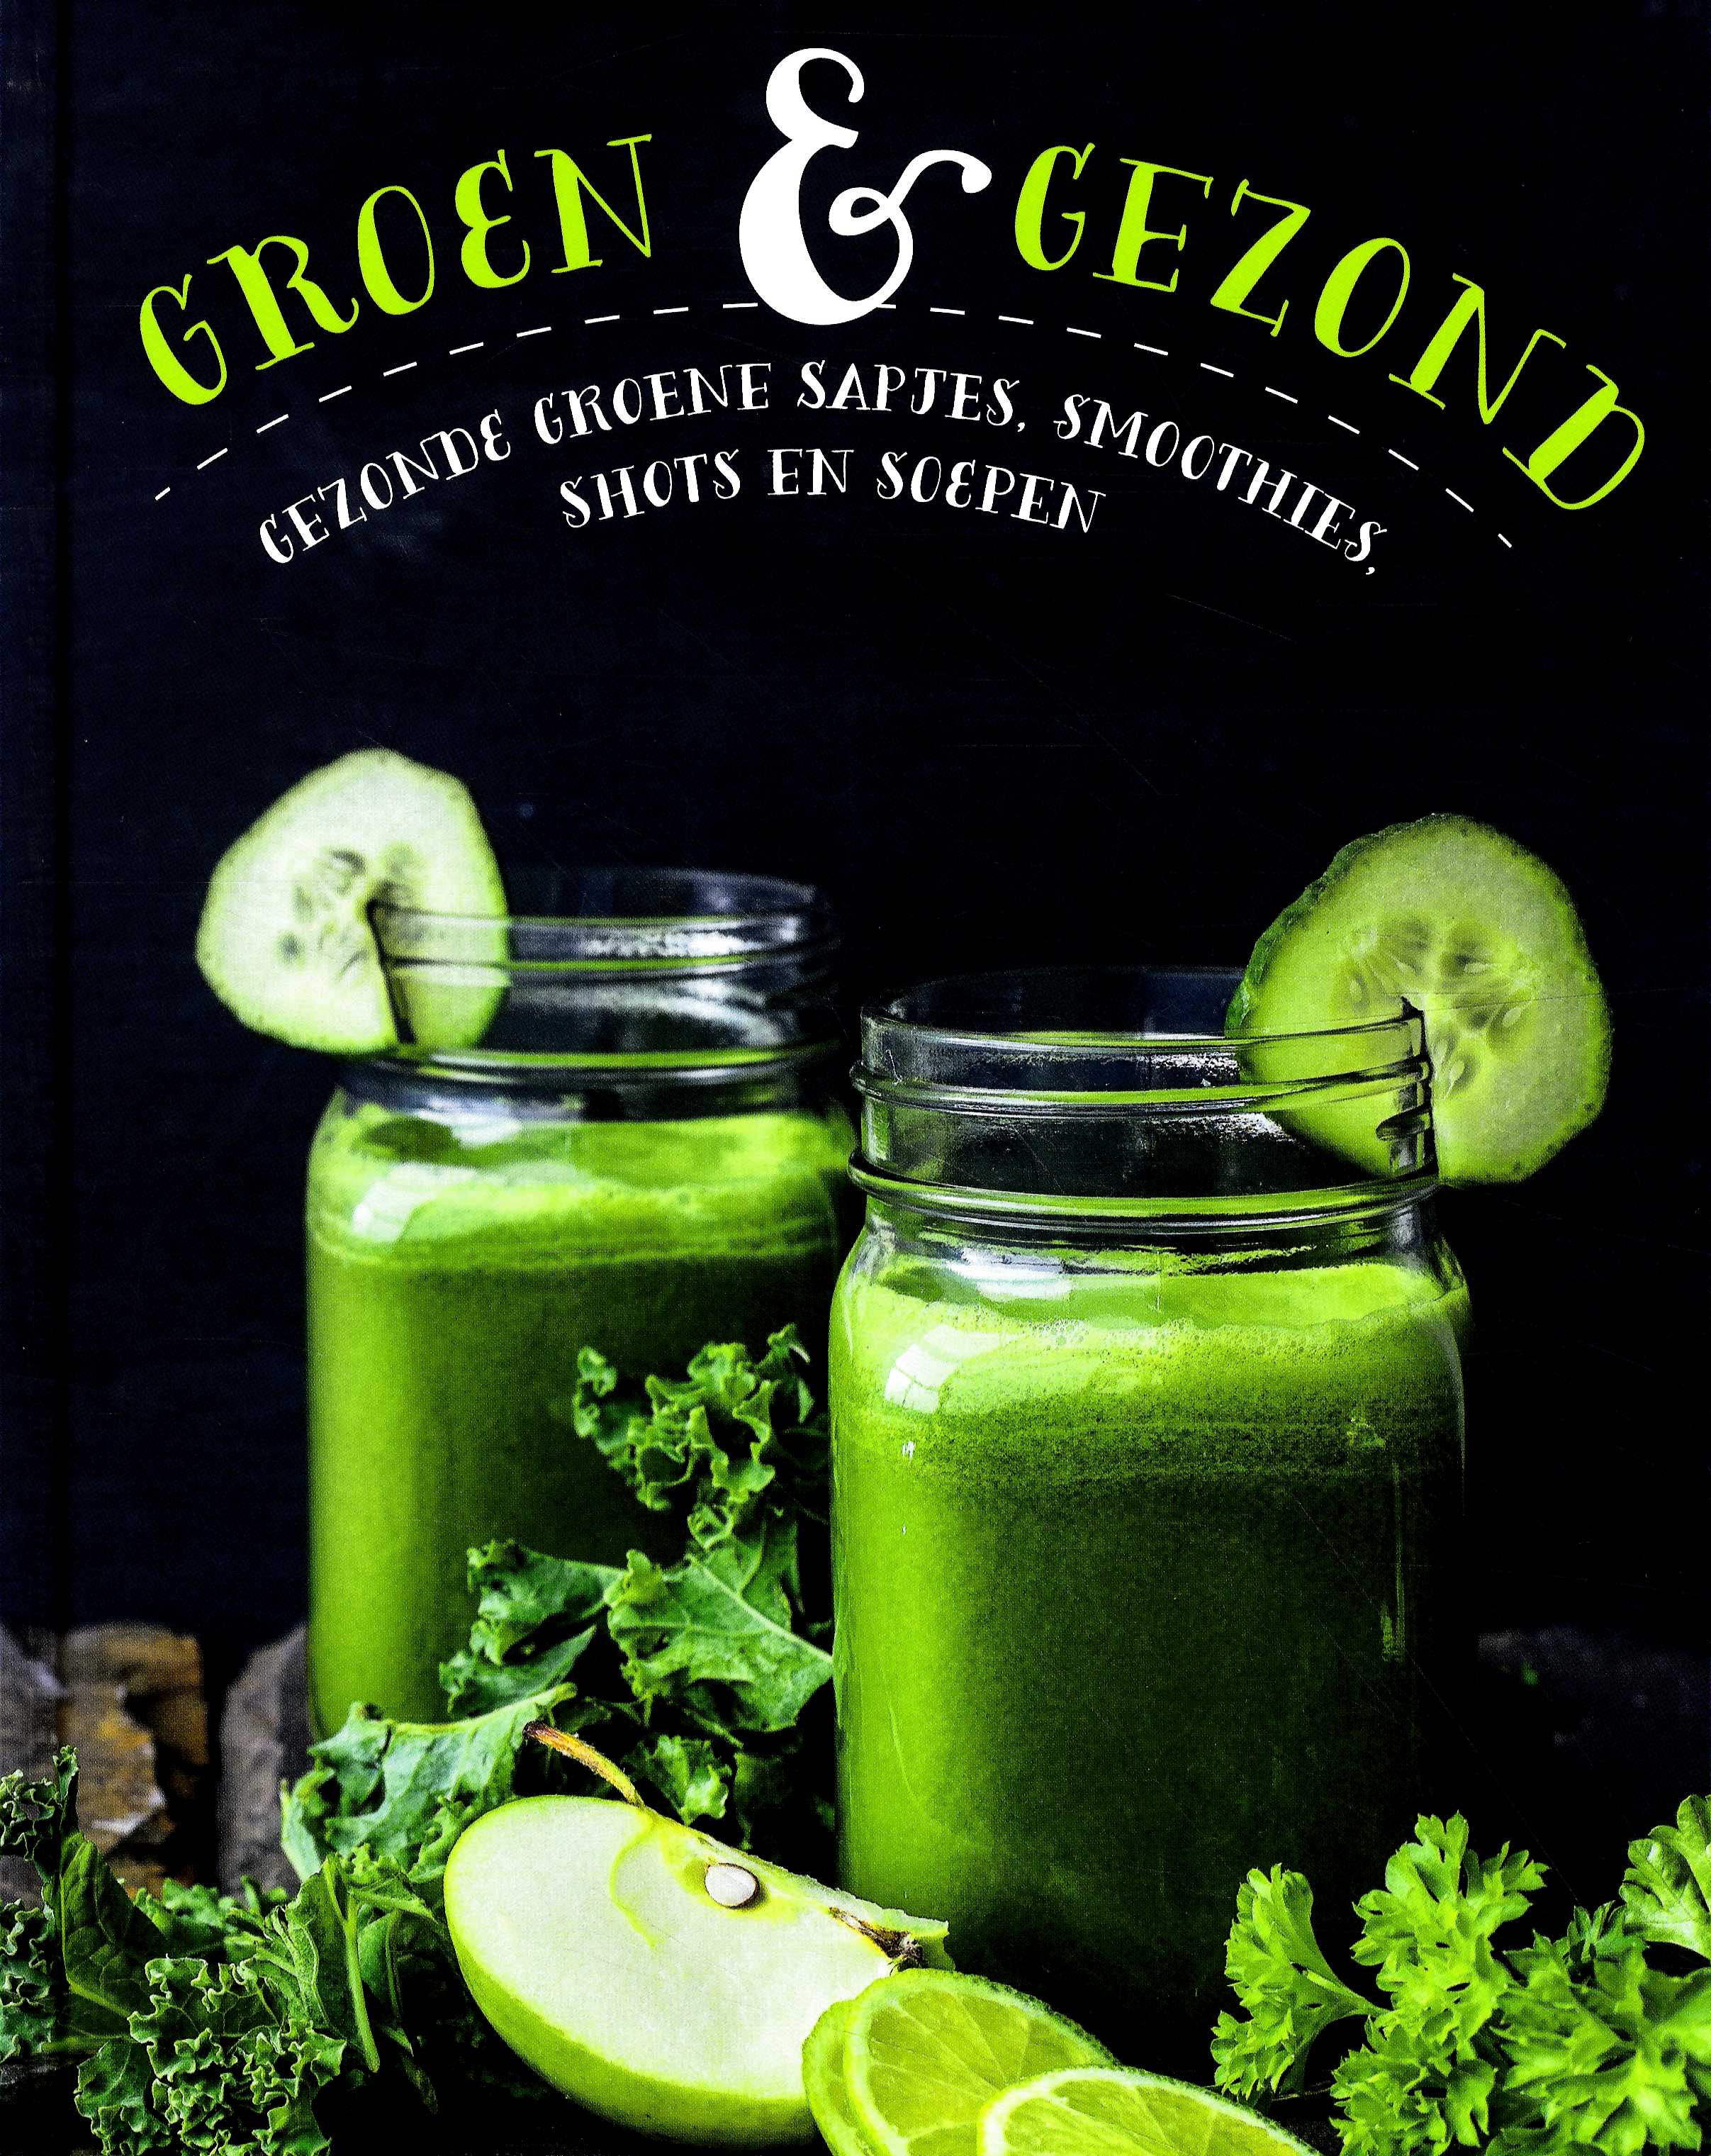 Groen & gezond - Gezonde groene sapjes, smoothies, shots en soepen - 
div. medewerkers